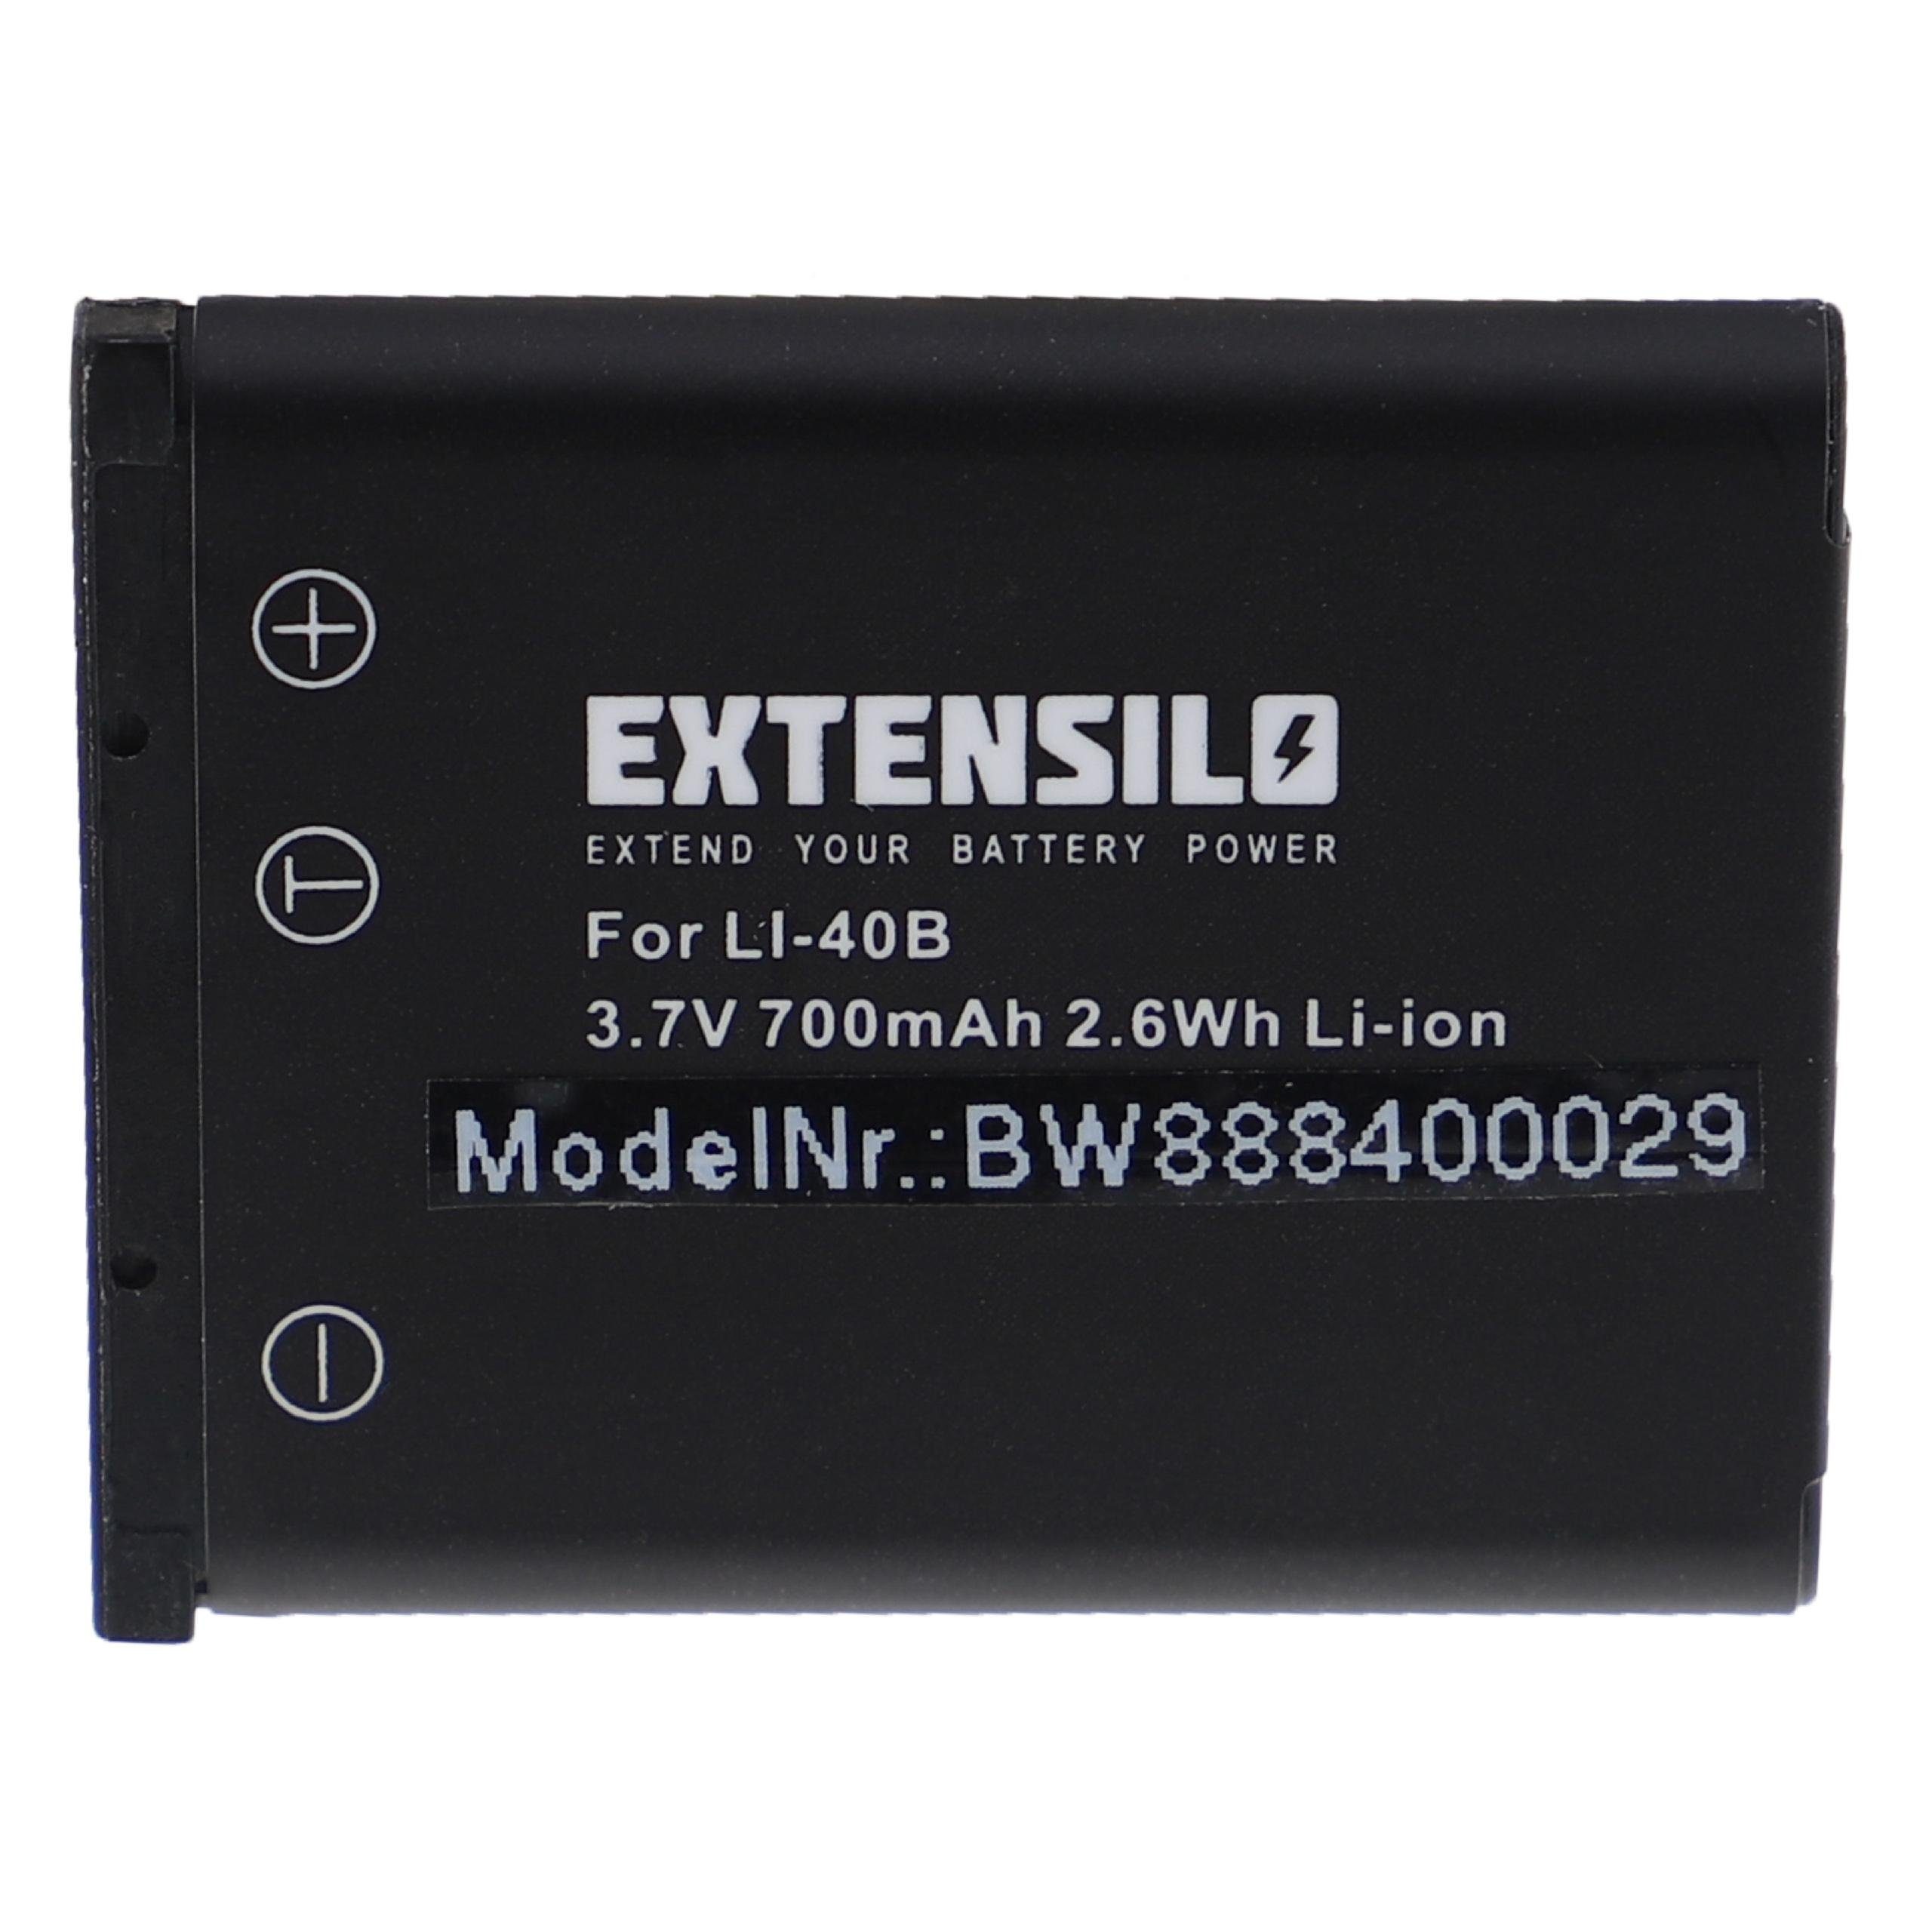 Extensilo Ersatz EN-EL10 für Li-Ion Nikon mAh (3,7 V) 700 für Kamera-Akku